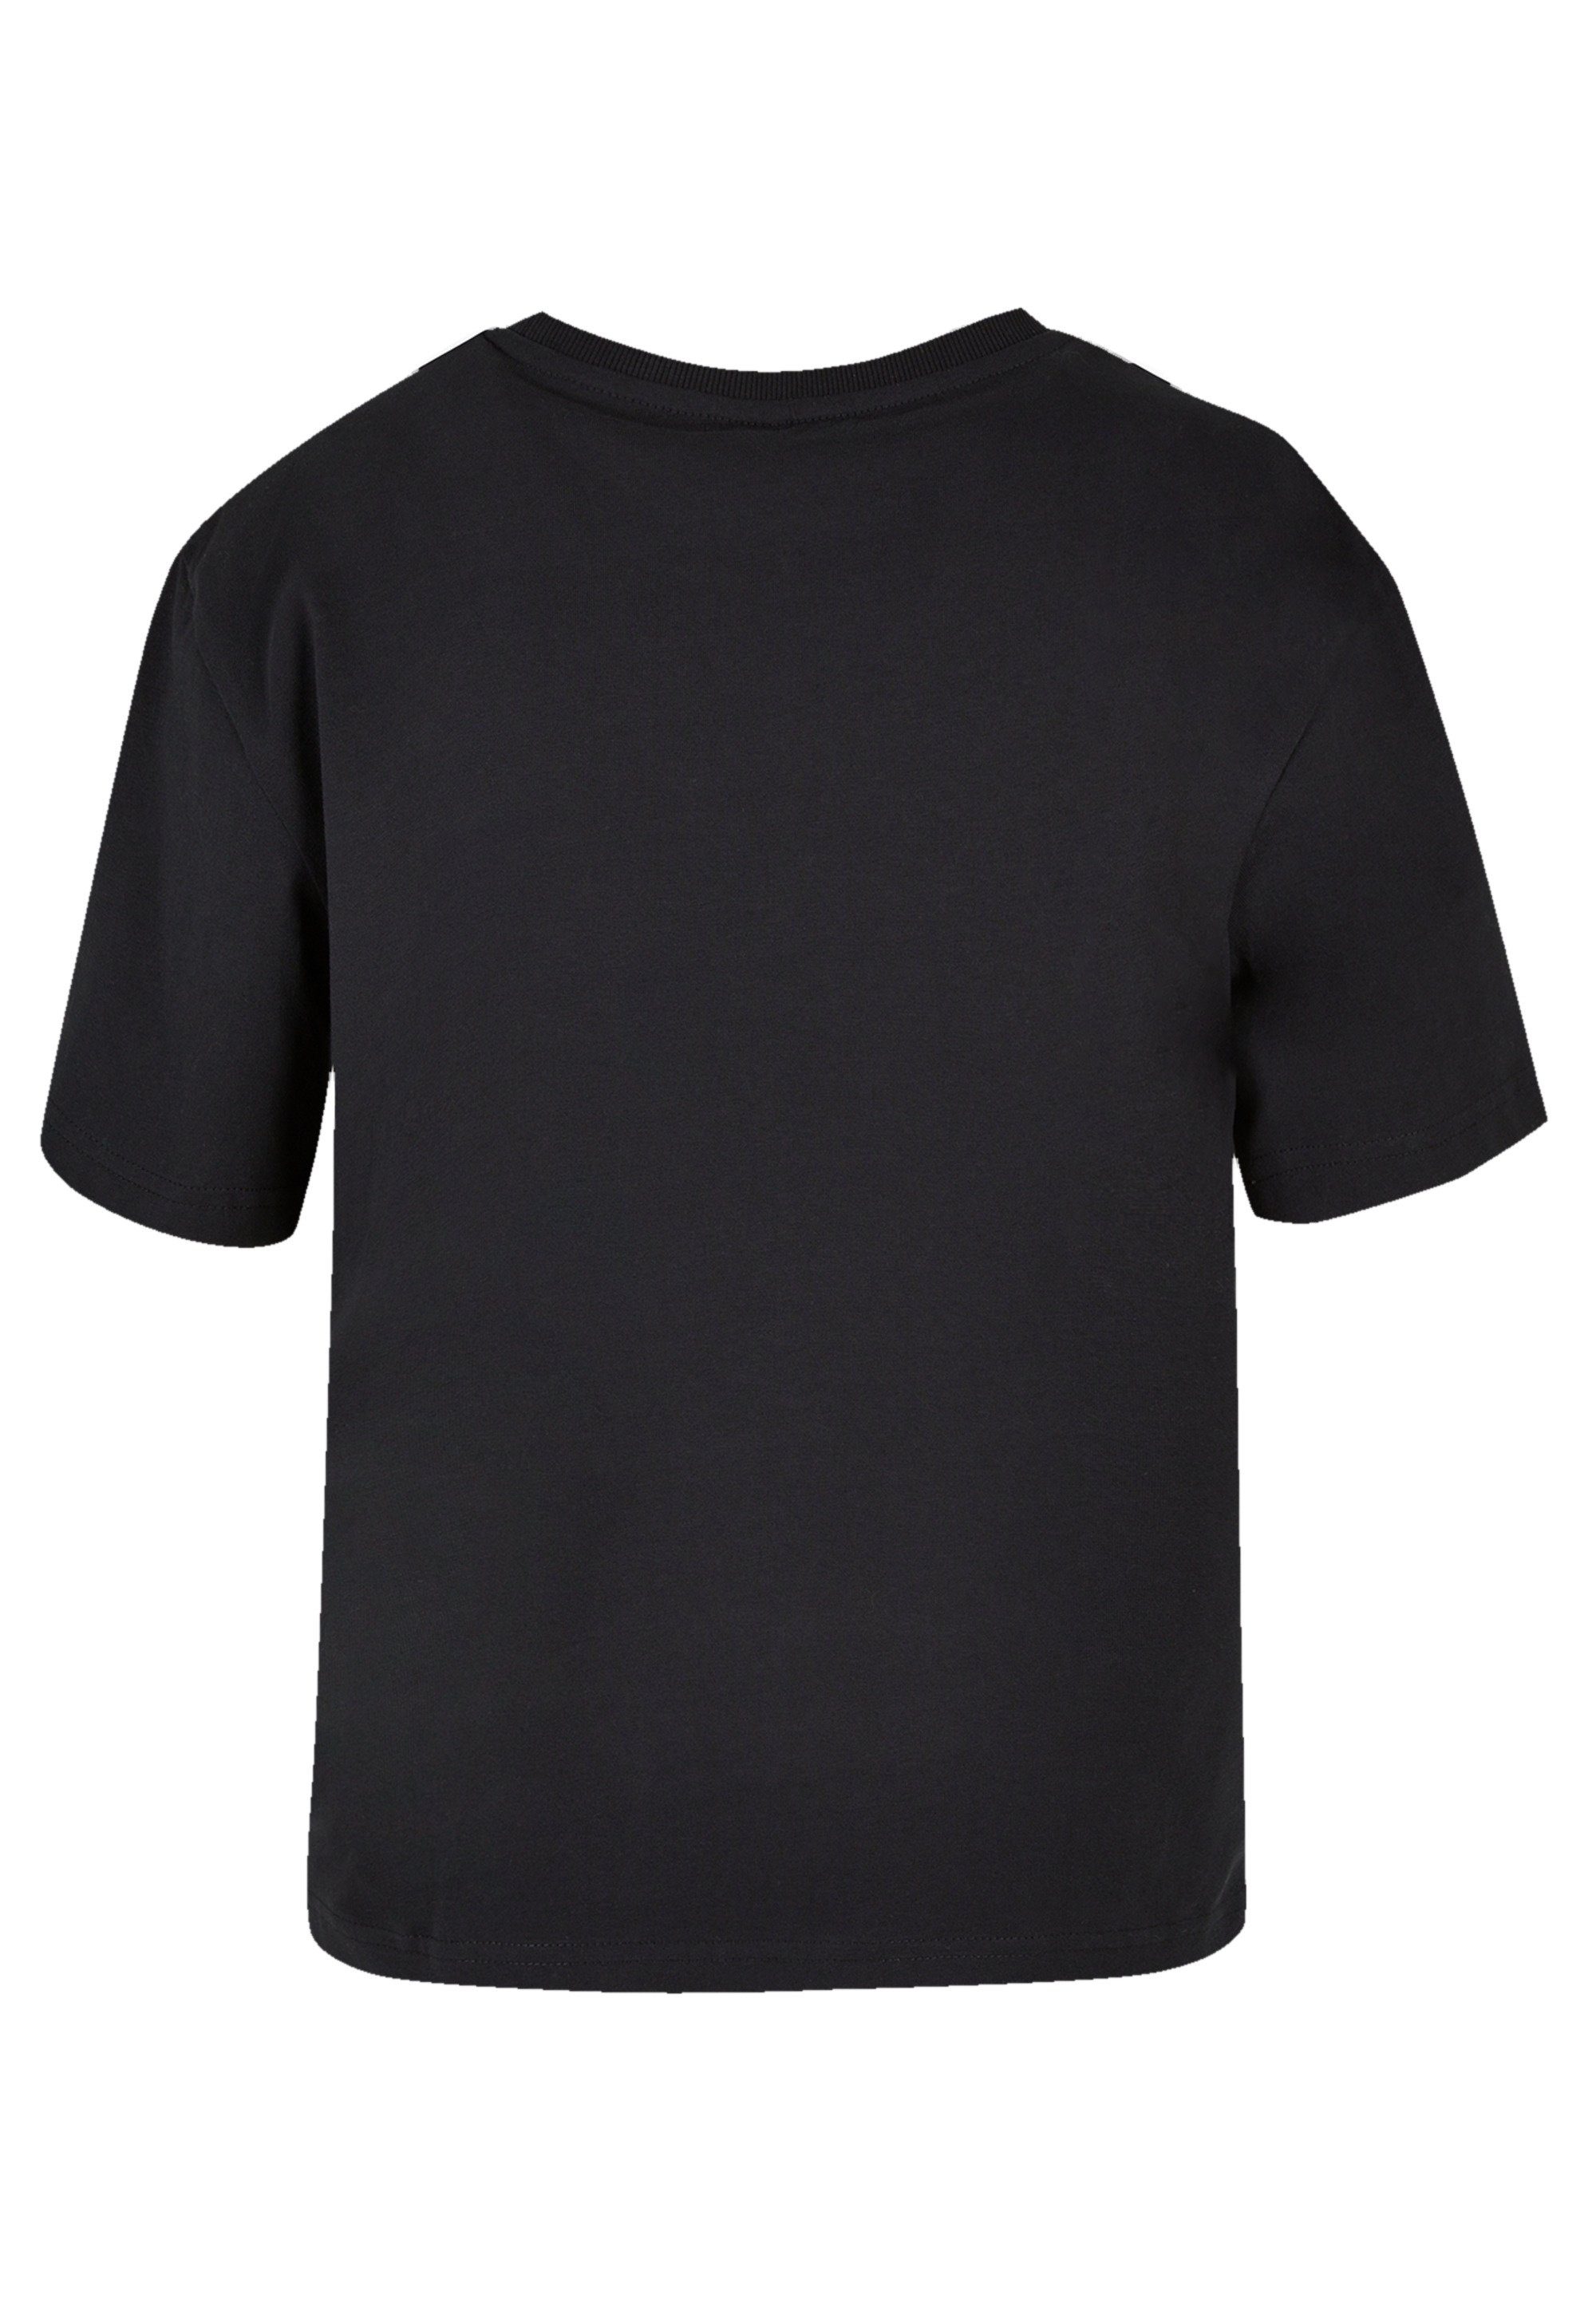 F4NT4STIC T-Shirt Disney Lilo & kombinierbar Premium und Komfortabel vielseitig Heartbreaker Stitch Qualität